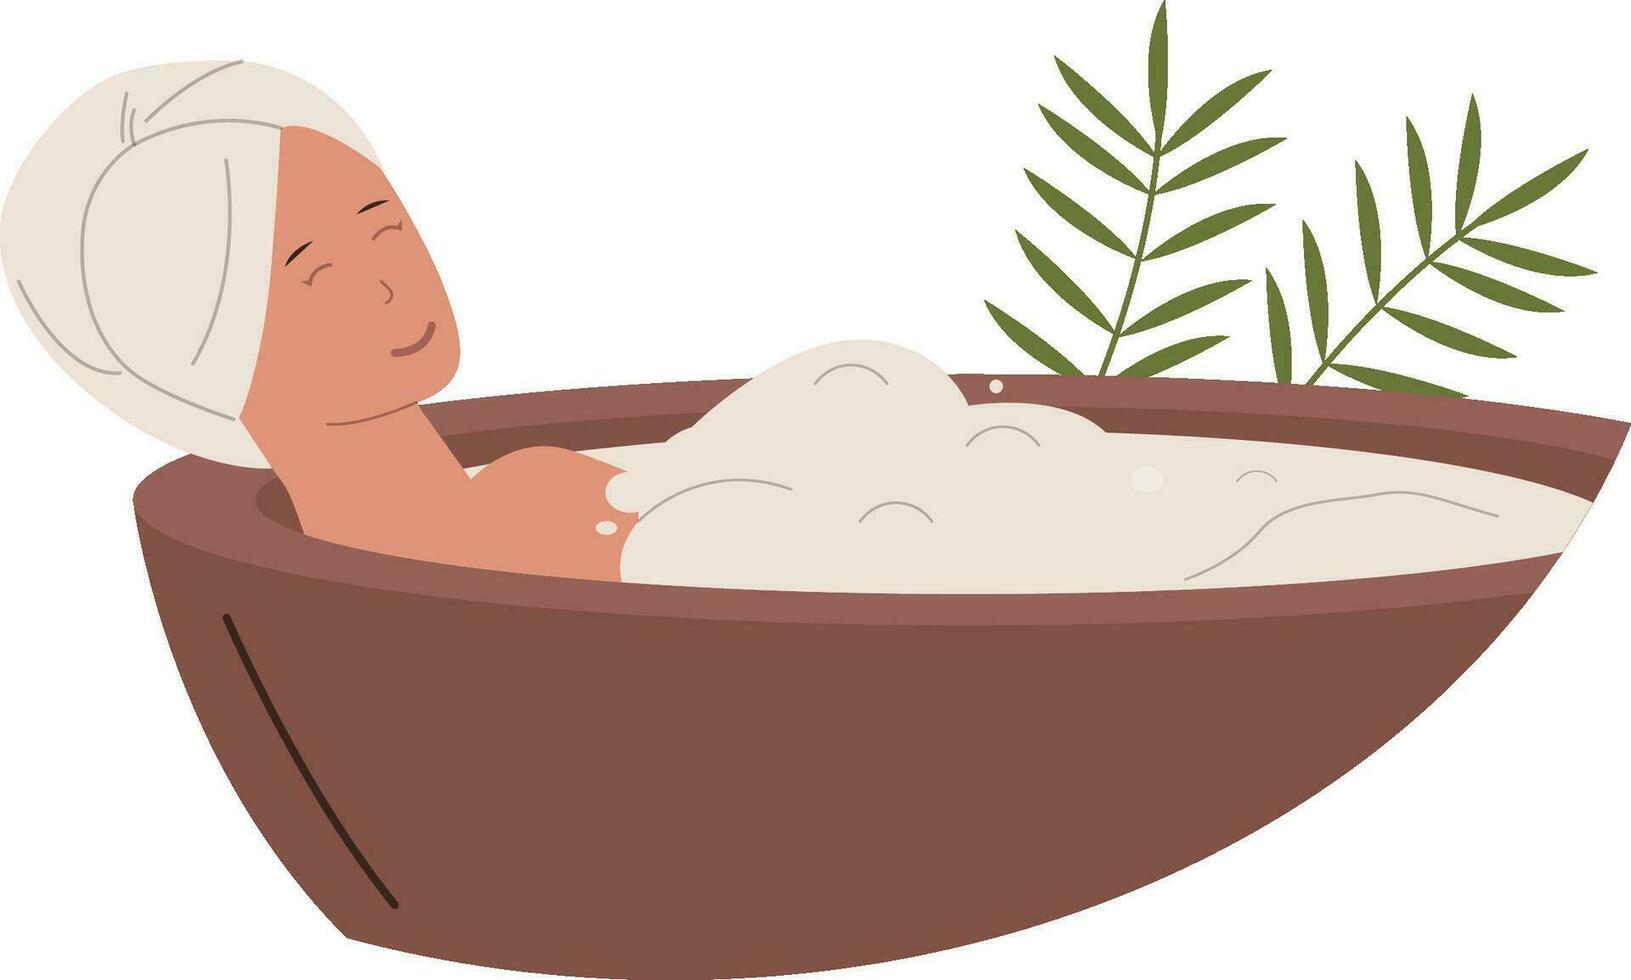 plano Projeto do banheira relaxante mulher e spa tratamento vetor